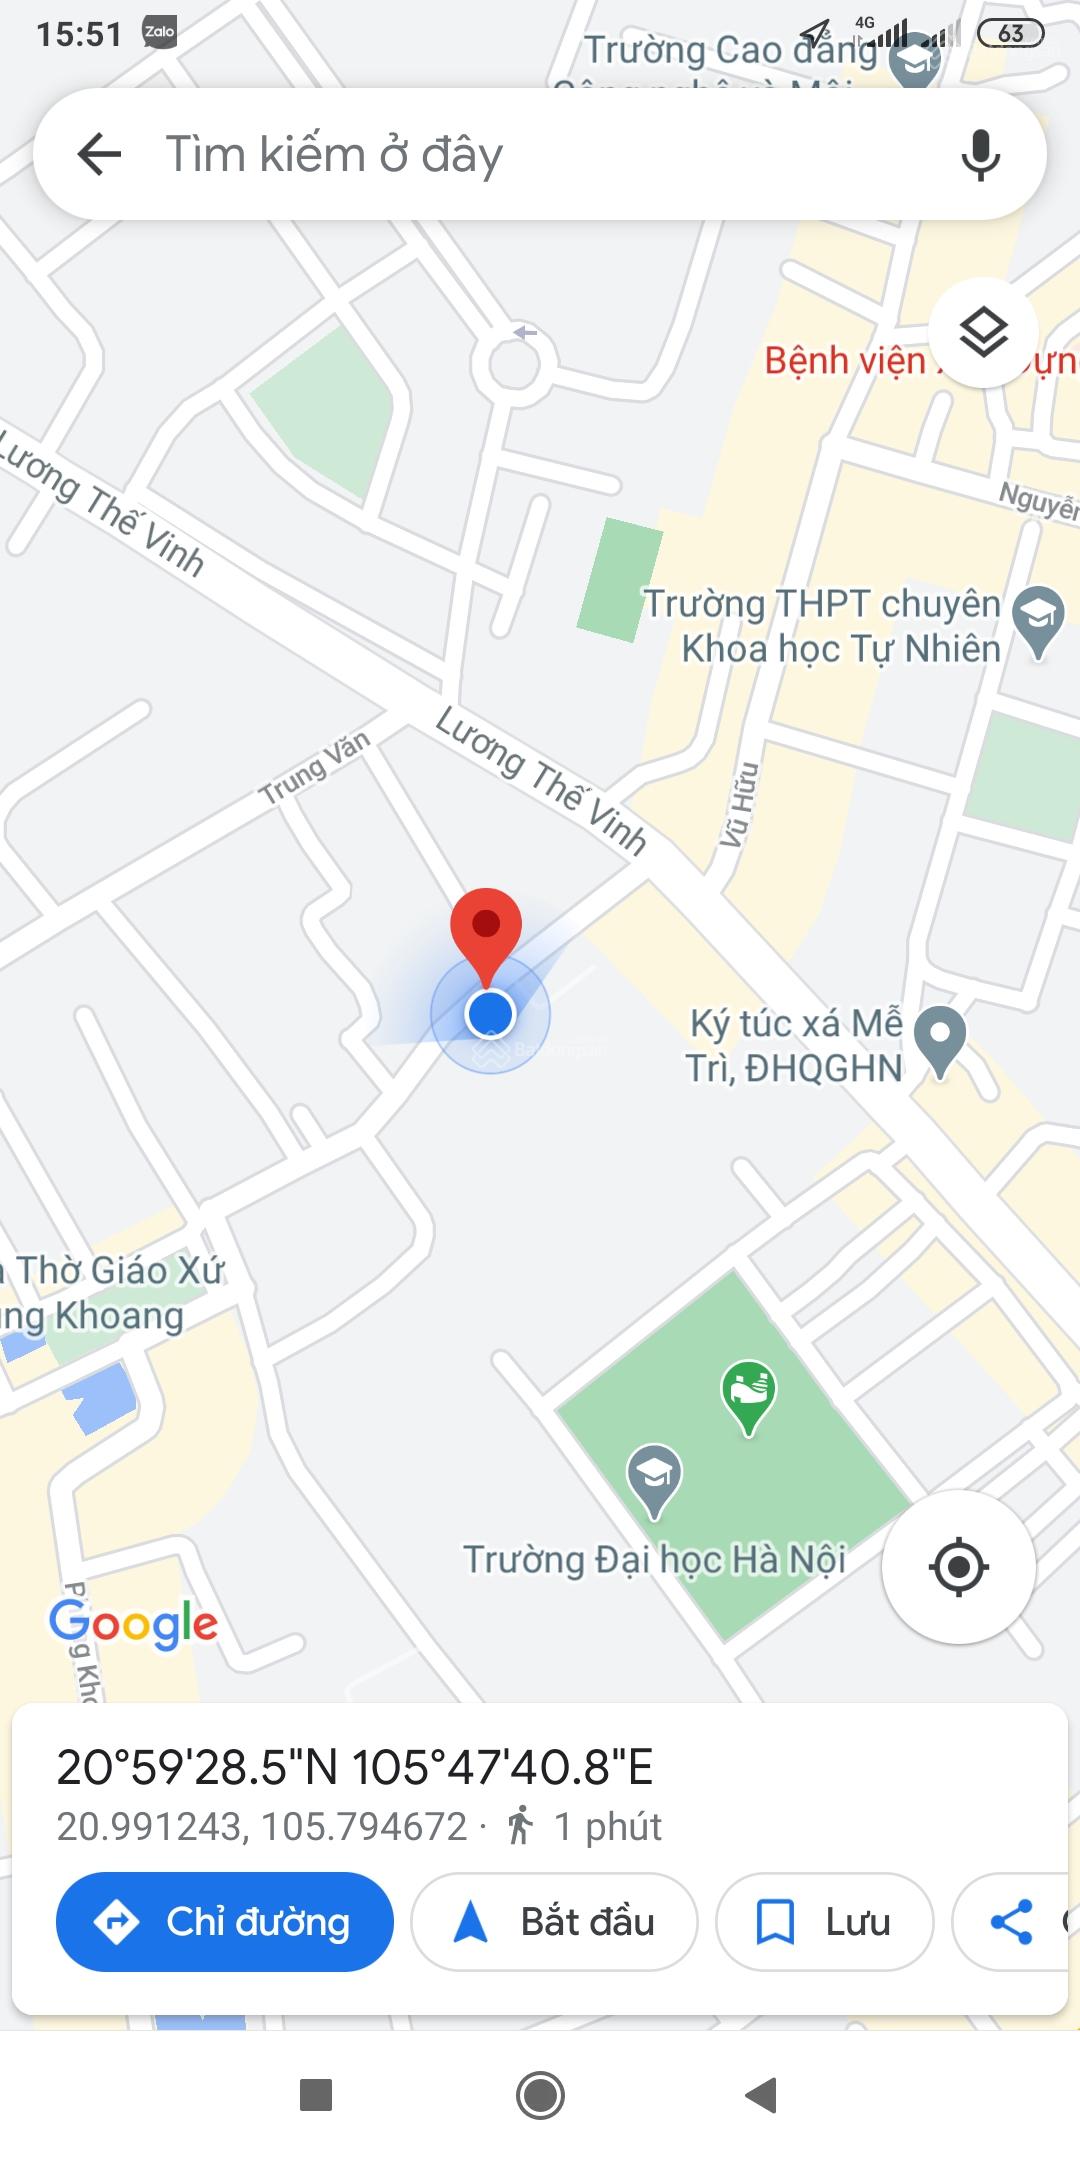 Chính chủ cho thuê cửa hàng 4tr/1 tháng mặt đường Phùng Khoang, cách đường Lương Thế Vinh 150m